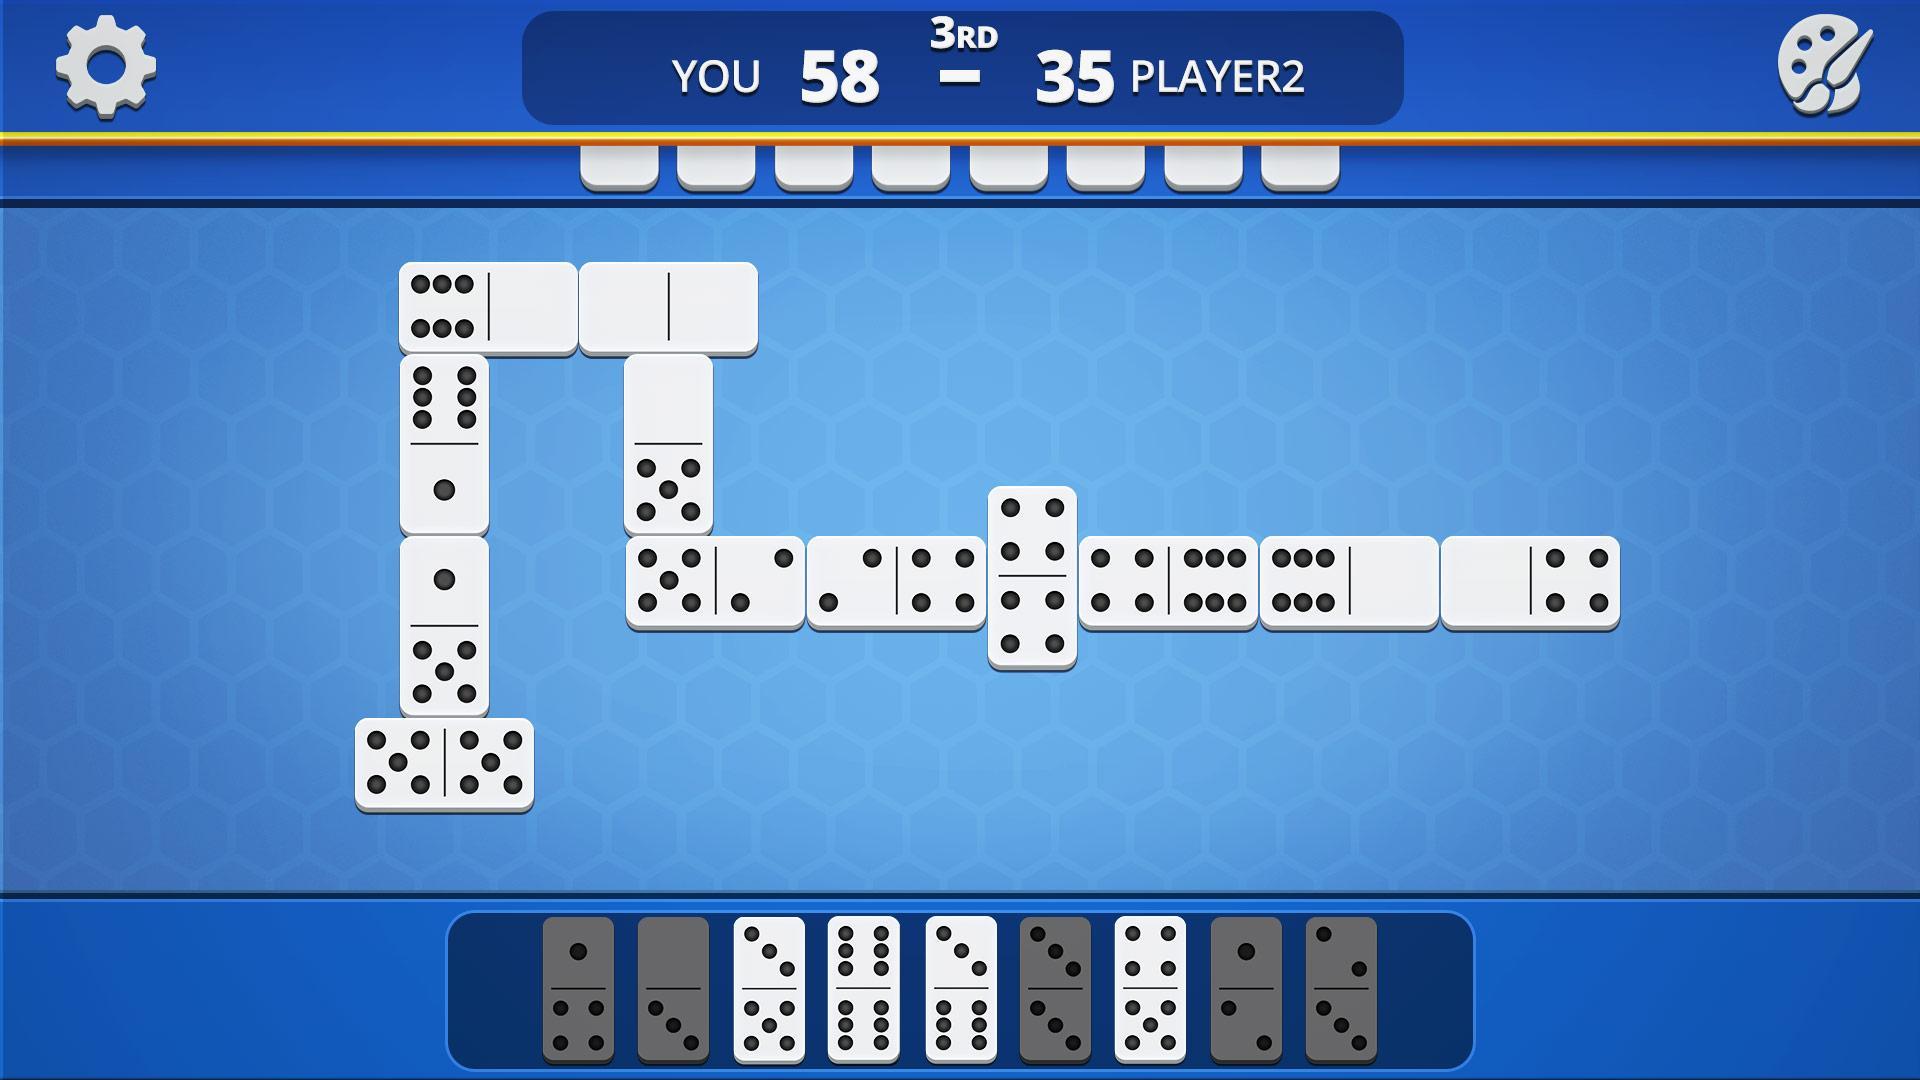 Dominoes Classic Domino Tile Based Game 1.2.5 Screenshot 16